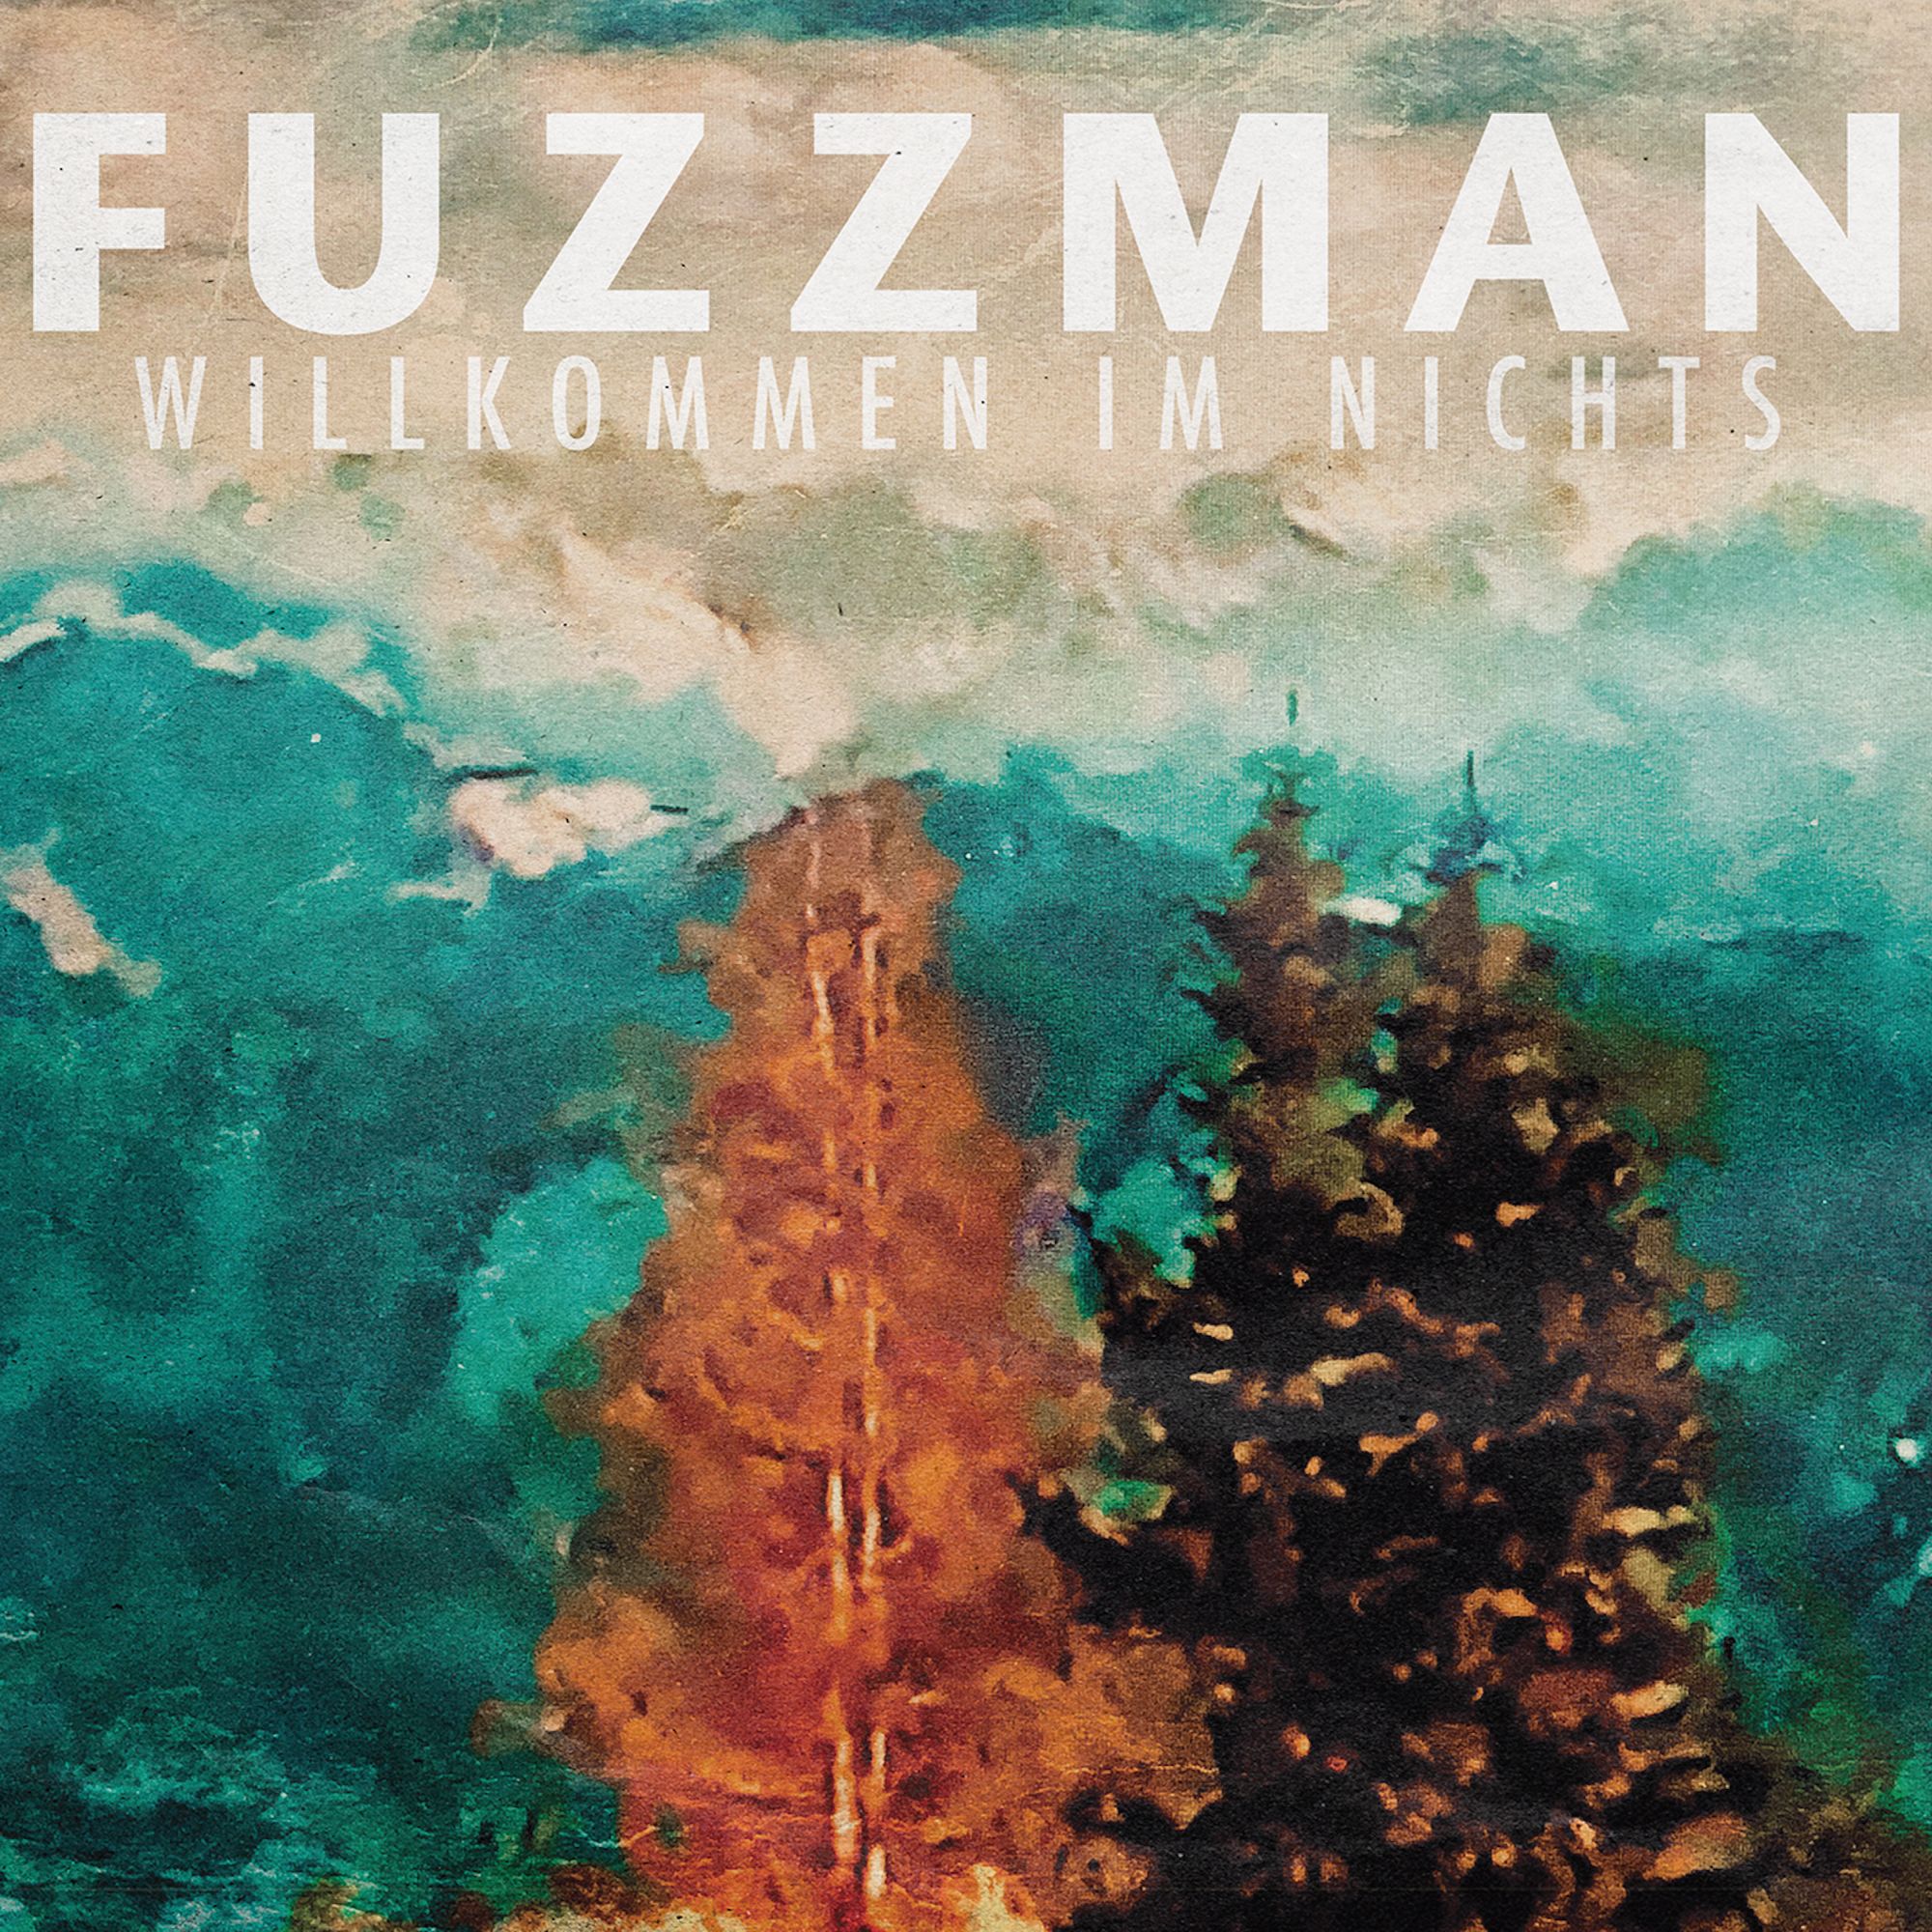 Fuzzman - Willkommen im Nichts